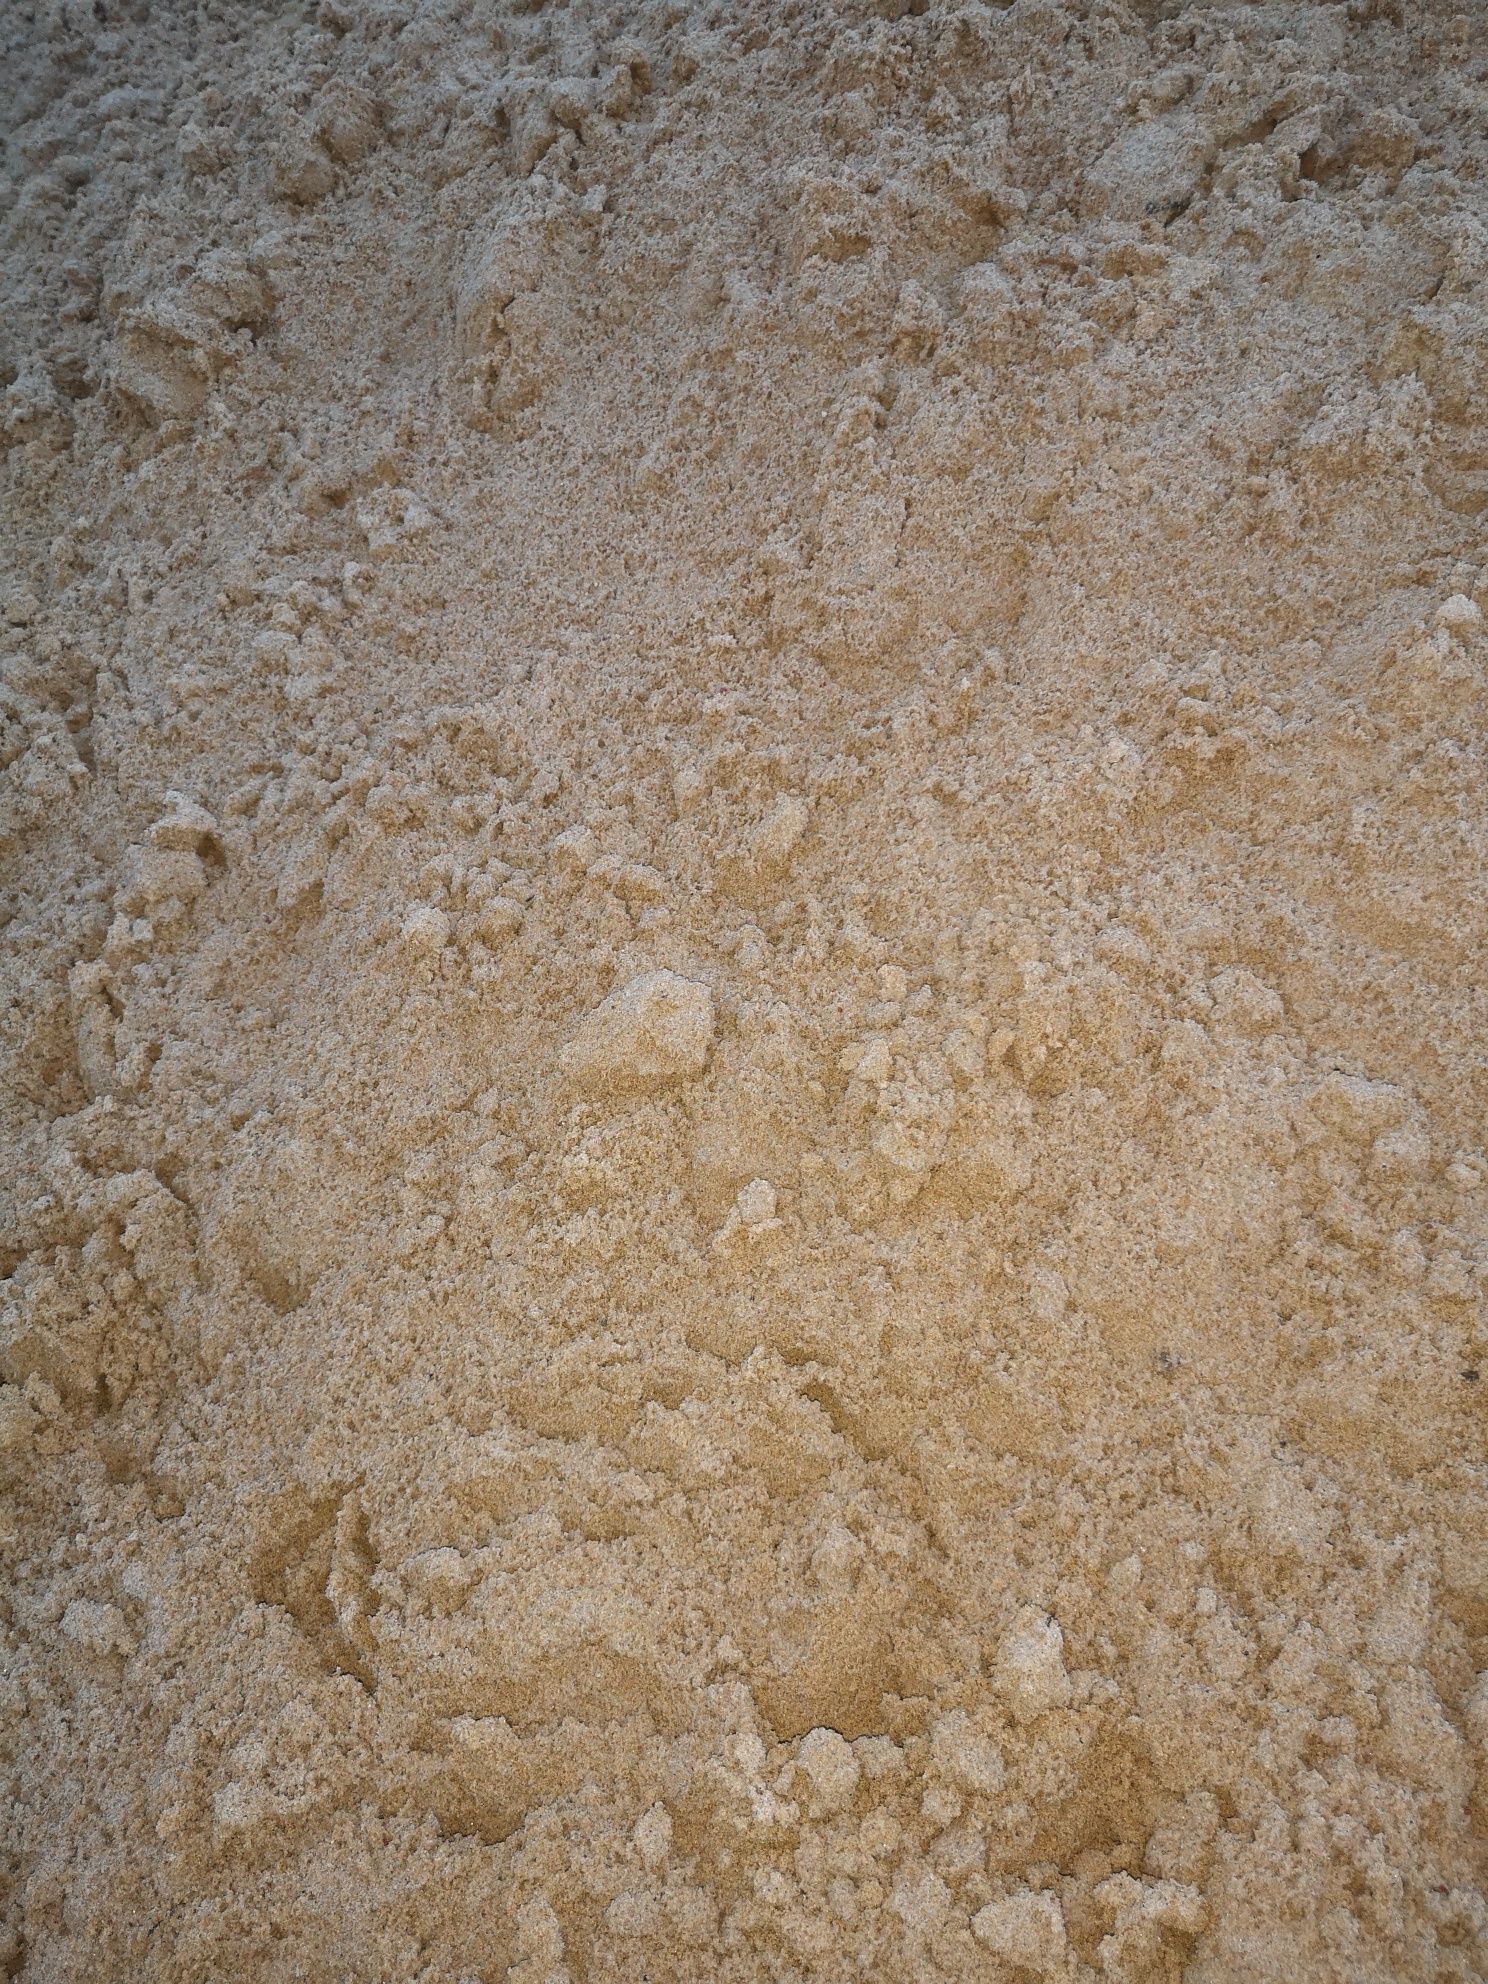 Piasek kopalniak sortowany Piasek ostry 0-2mm, wiślak do betonu